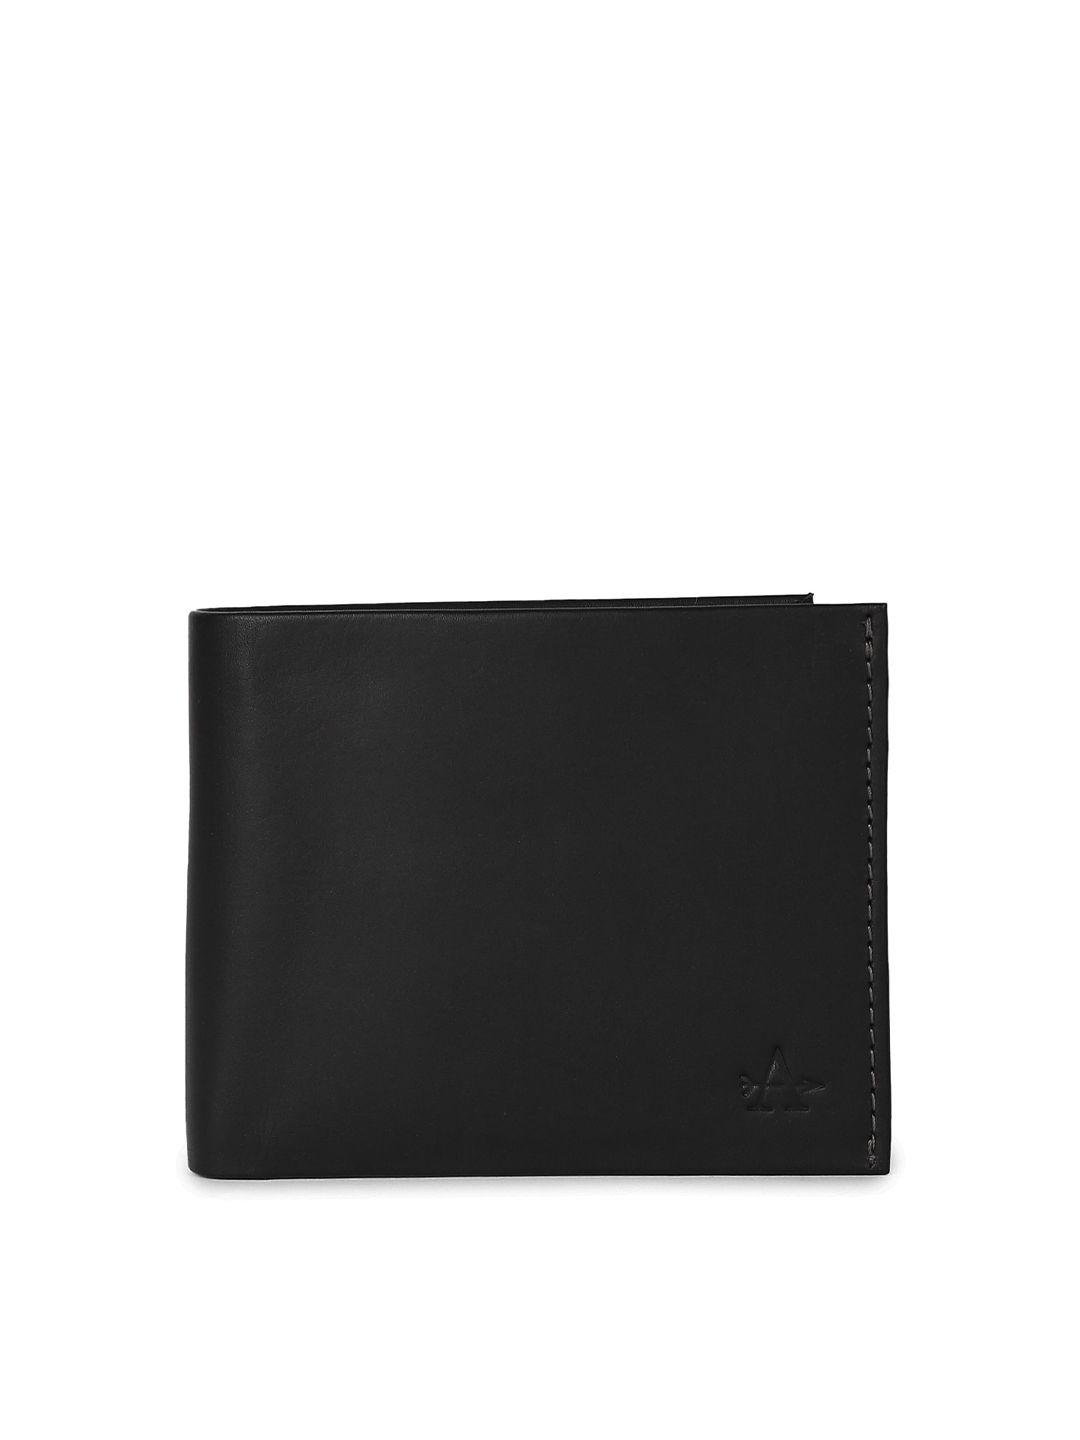 arrow men black leather two fold wallet